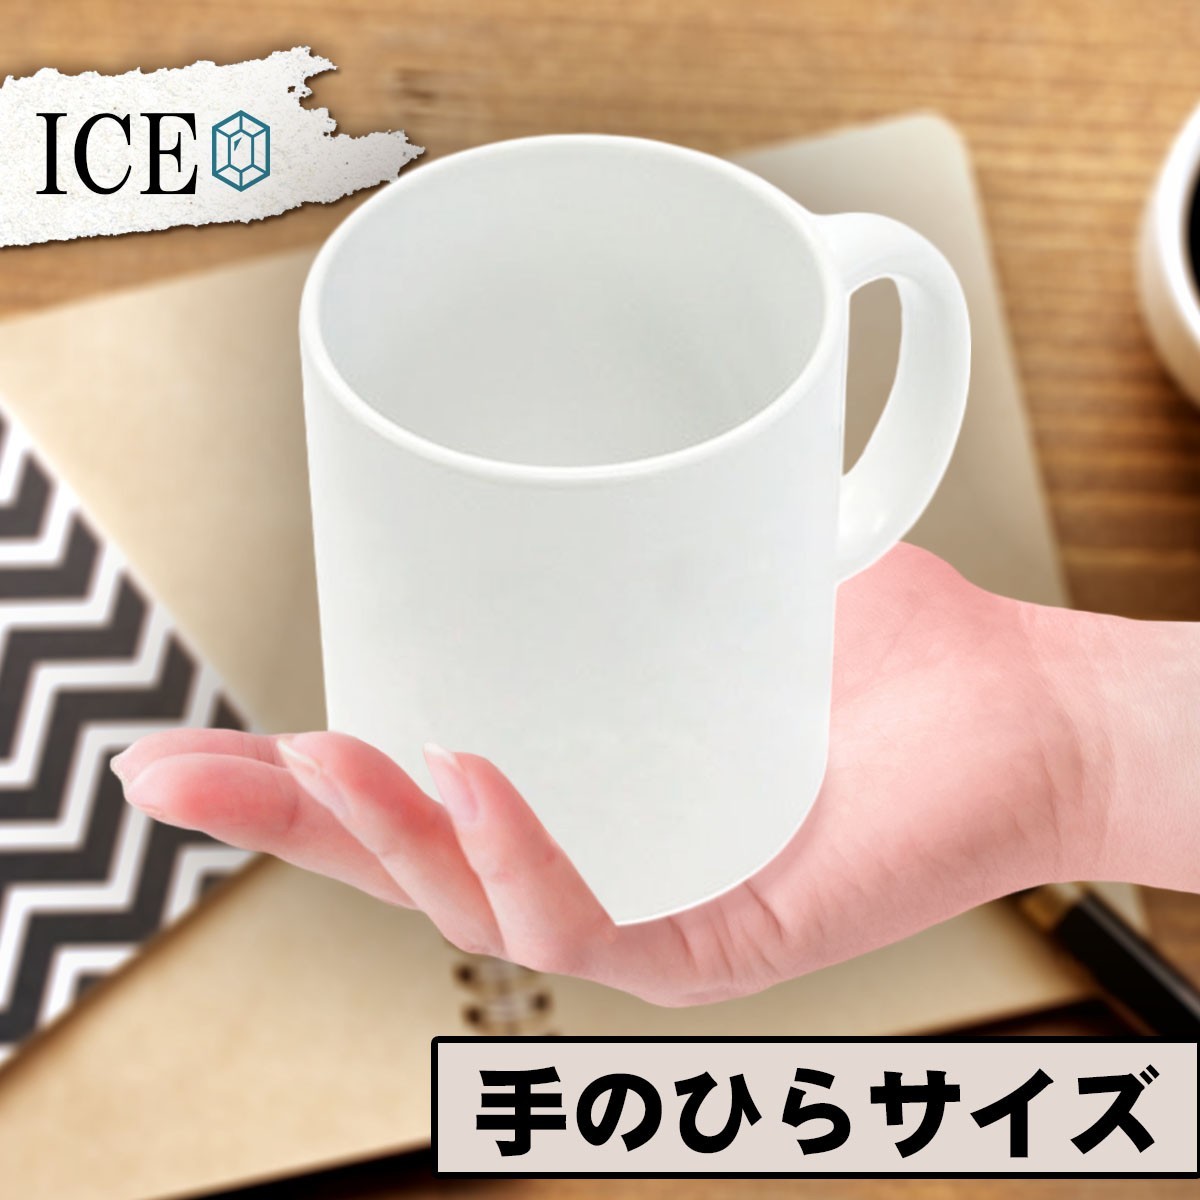 エスカレーター 青 おもしろ マグカップ コップ 陶器 可愛い かわいい 白 シンプル かわいい カッコイイ シュール 面白い ジョーク ゆるい_画像2